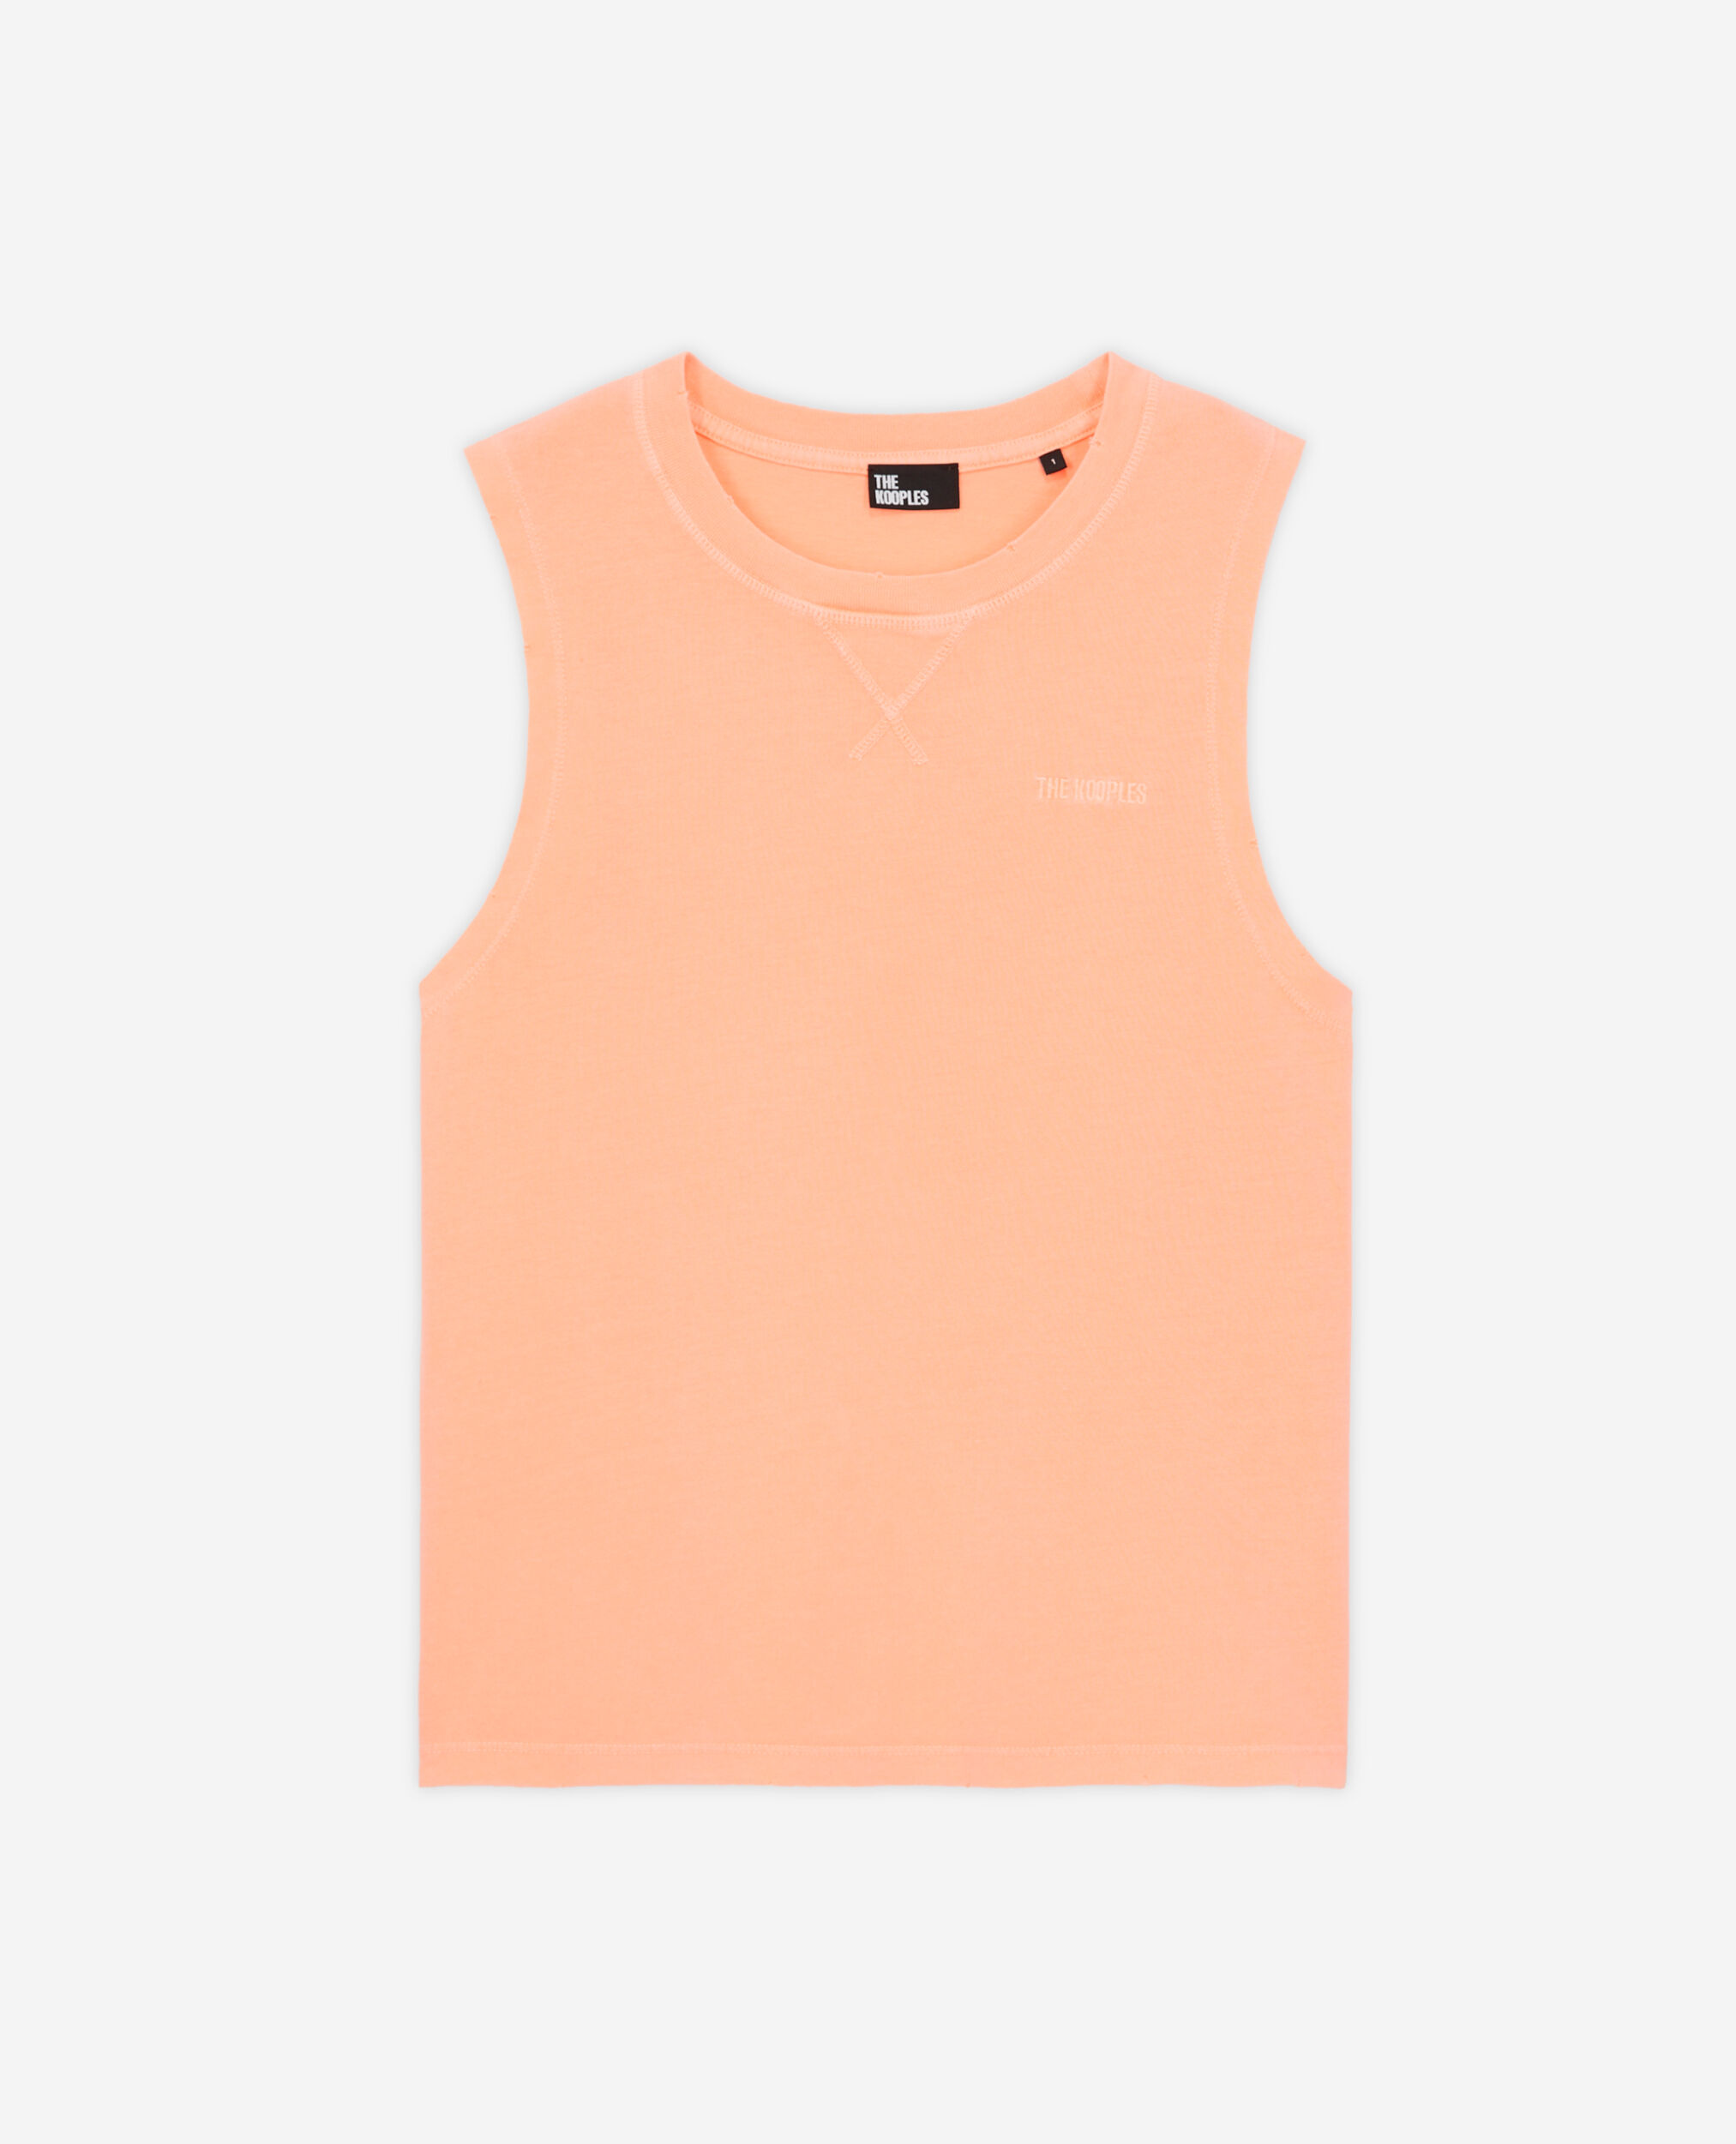 T-shirt Femme orange avec logo, ORANGE FLUO, hi-res image number null